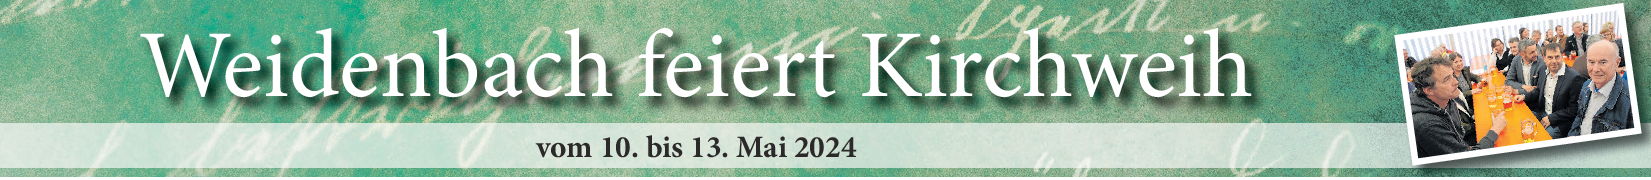 Kirchweih in Weidenbach vom 10.-13. Mai: Vier Tage voller Besonderheiten